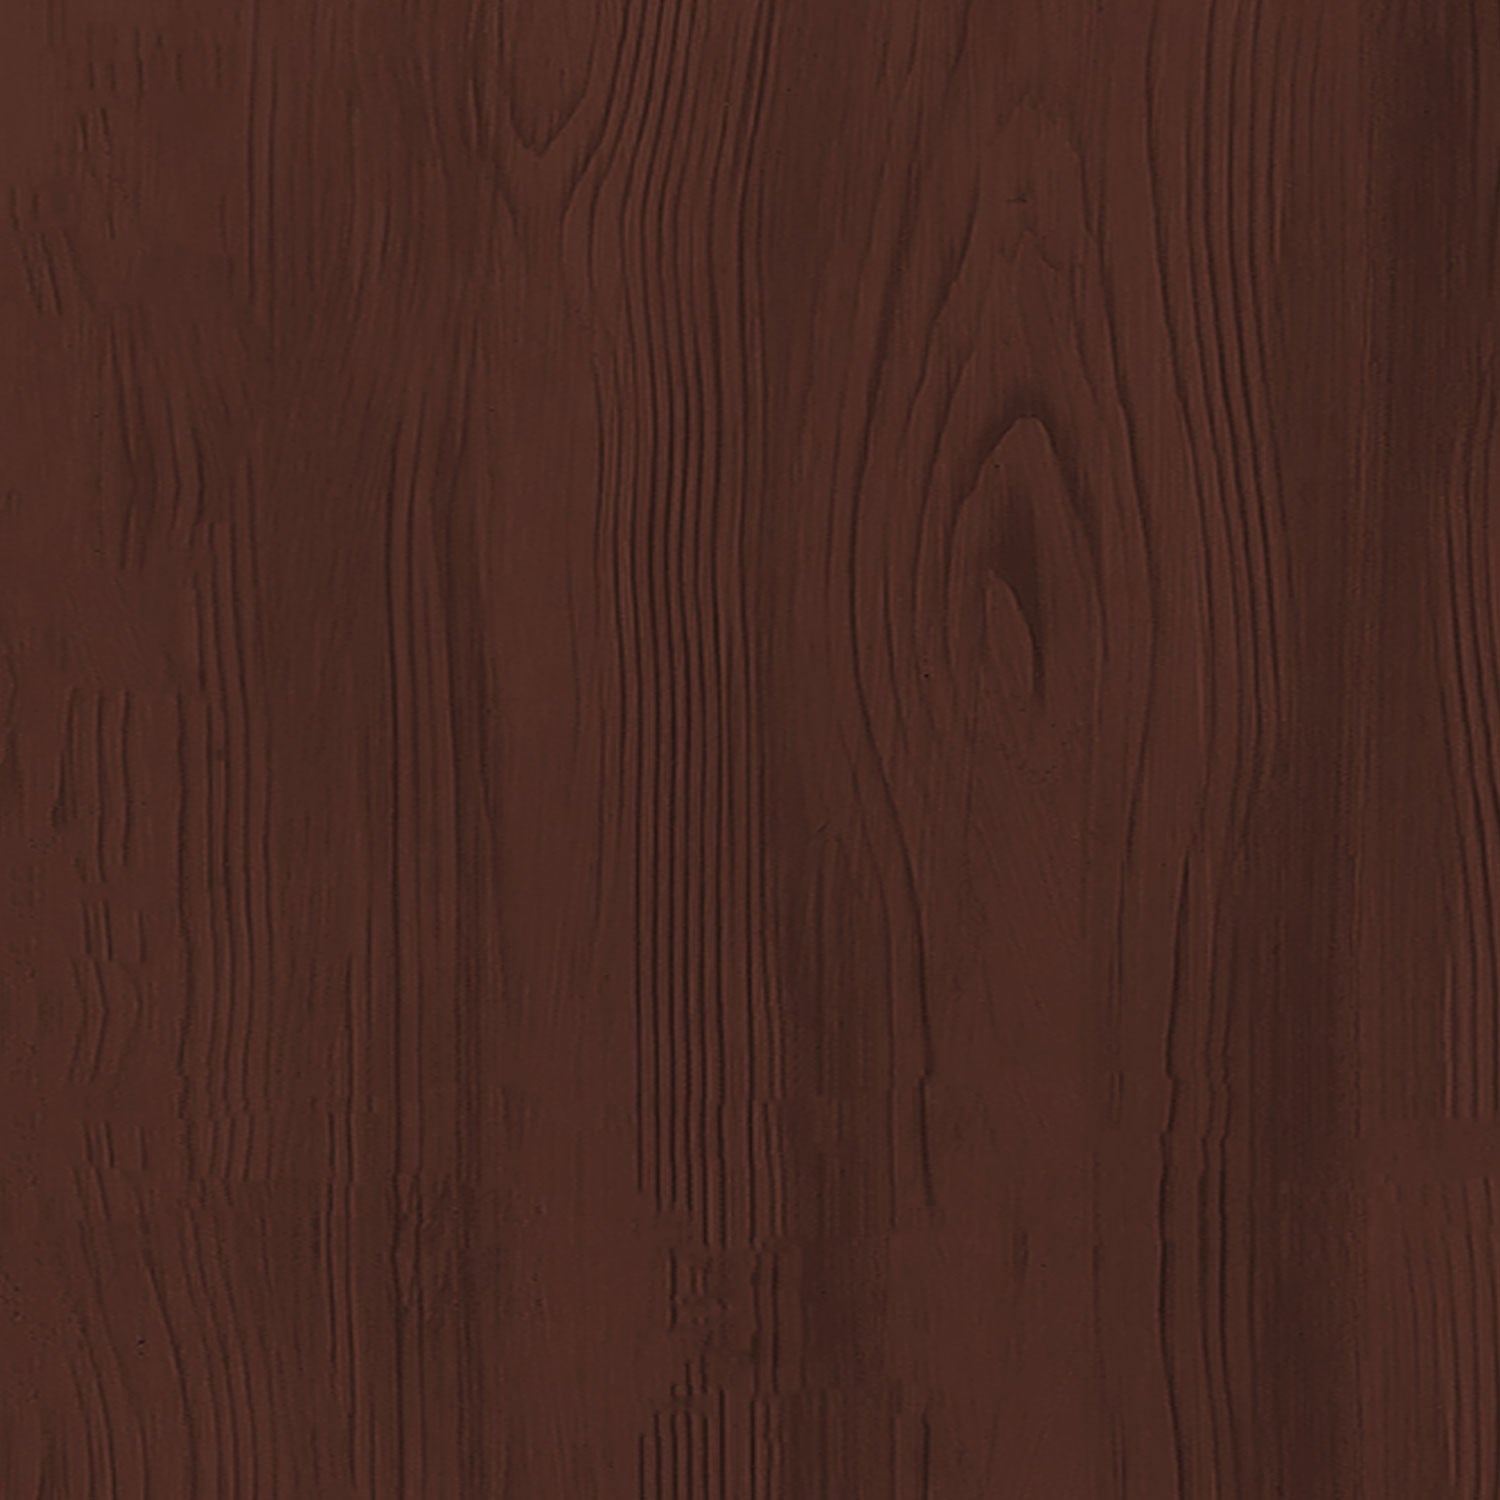 Multi-purpose Wood'n Kit (Med) - Red Mahogany - Interior Top Coat